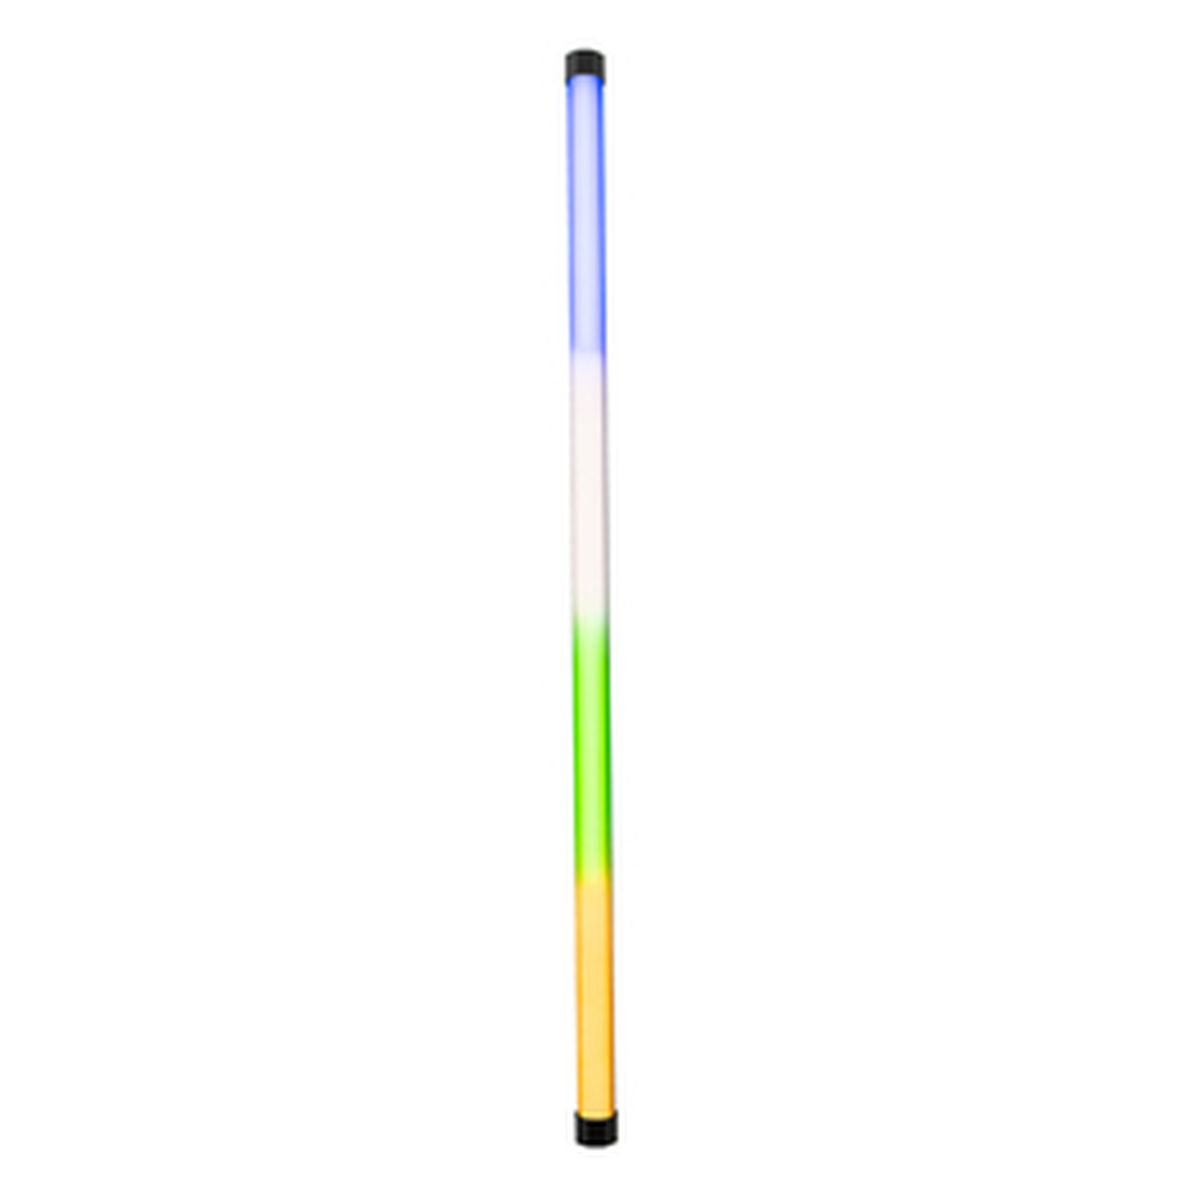 Nanlite PavoTube II 30X 1 Kit RGBWW Farb-Effektleuchte